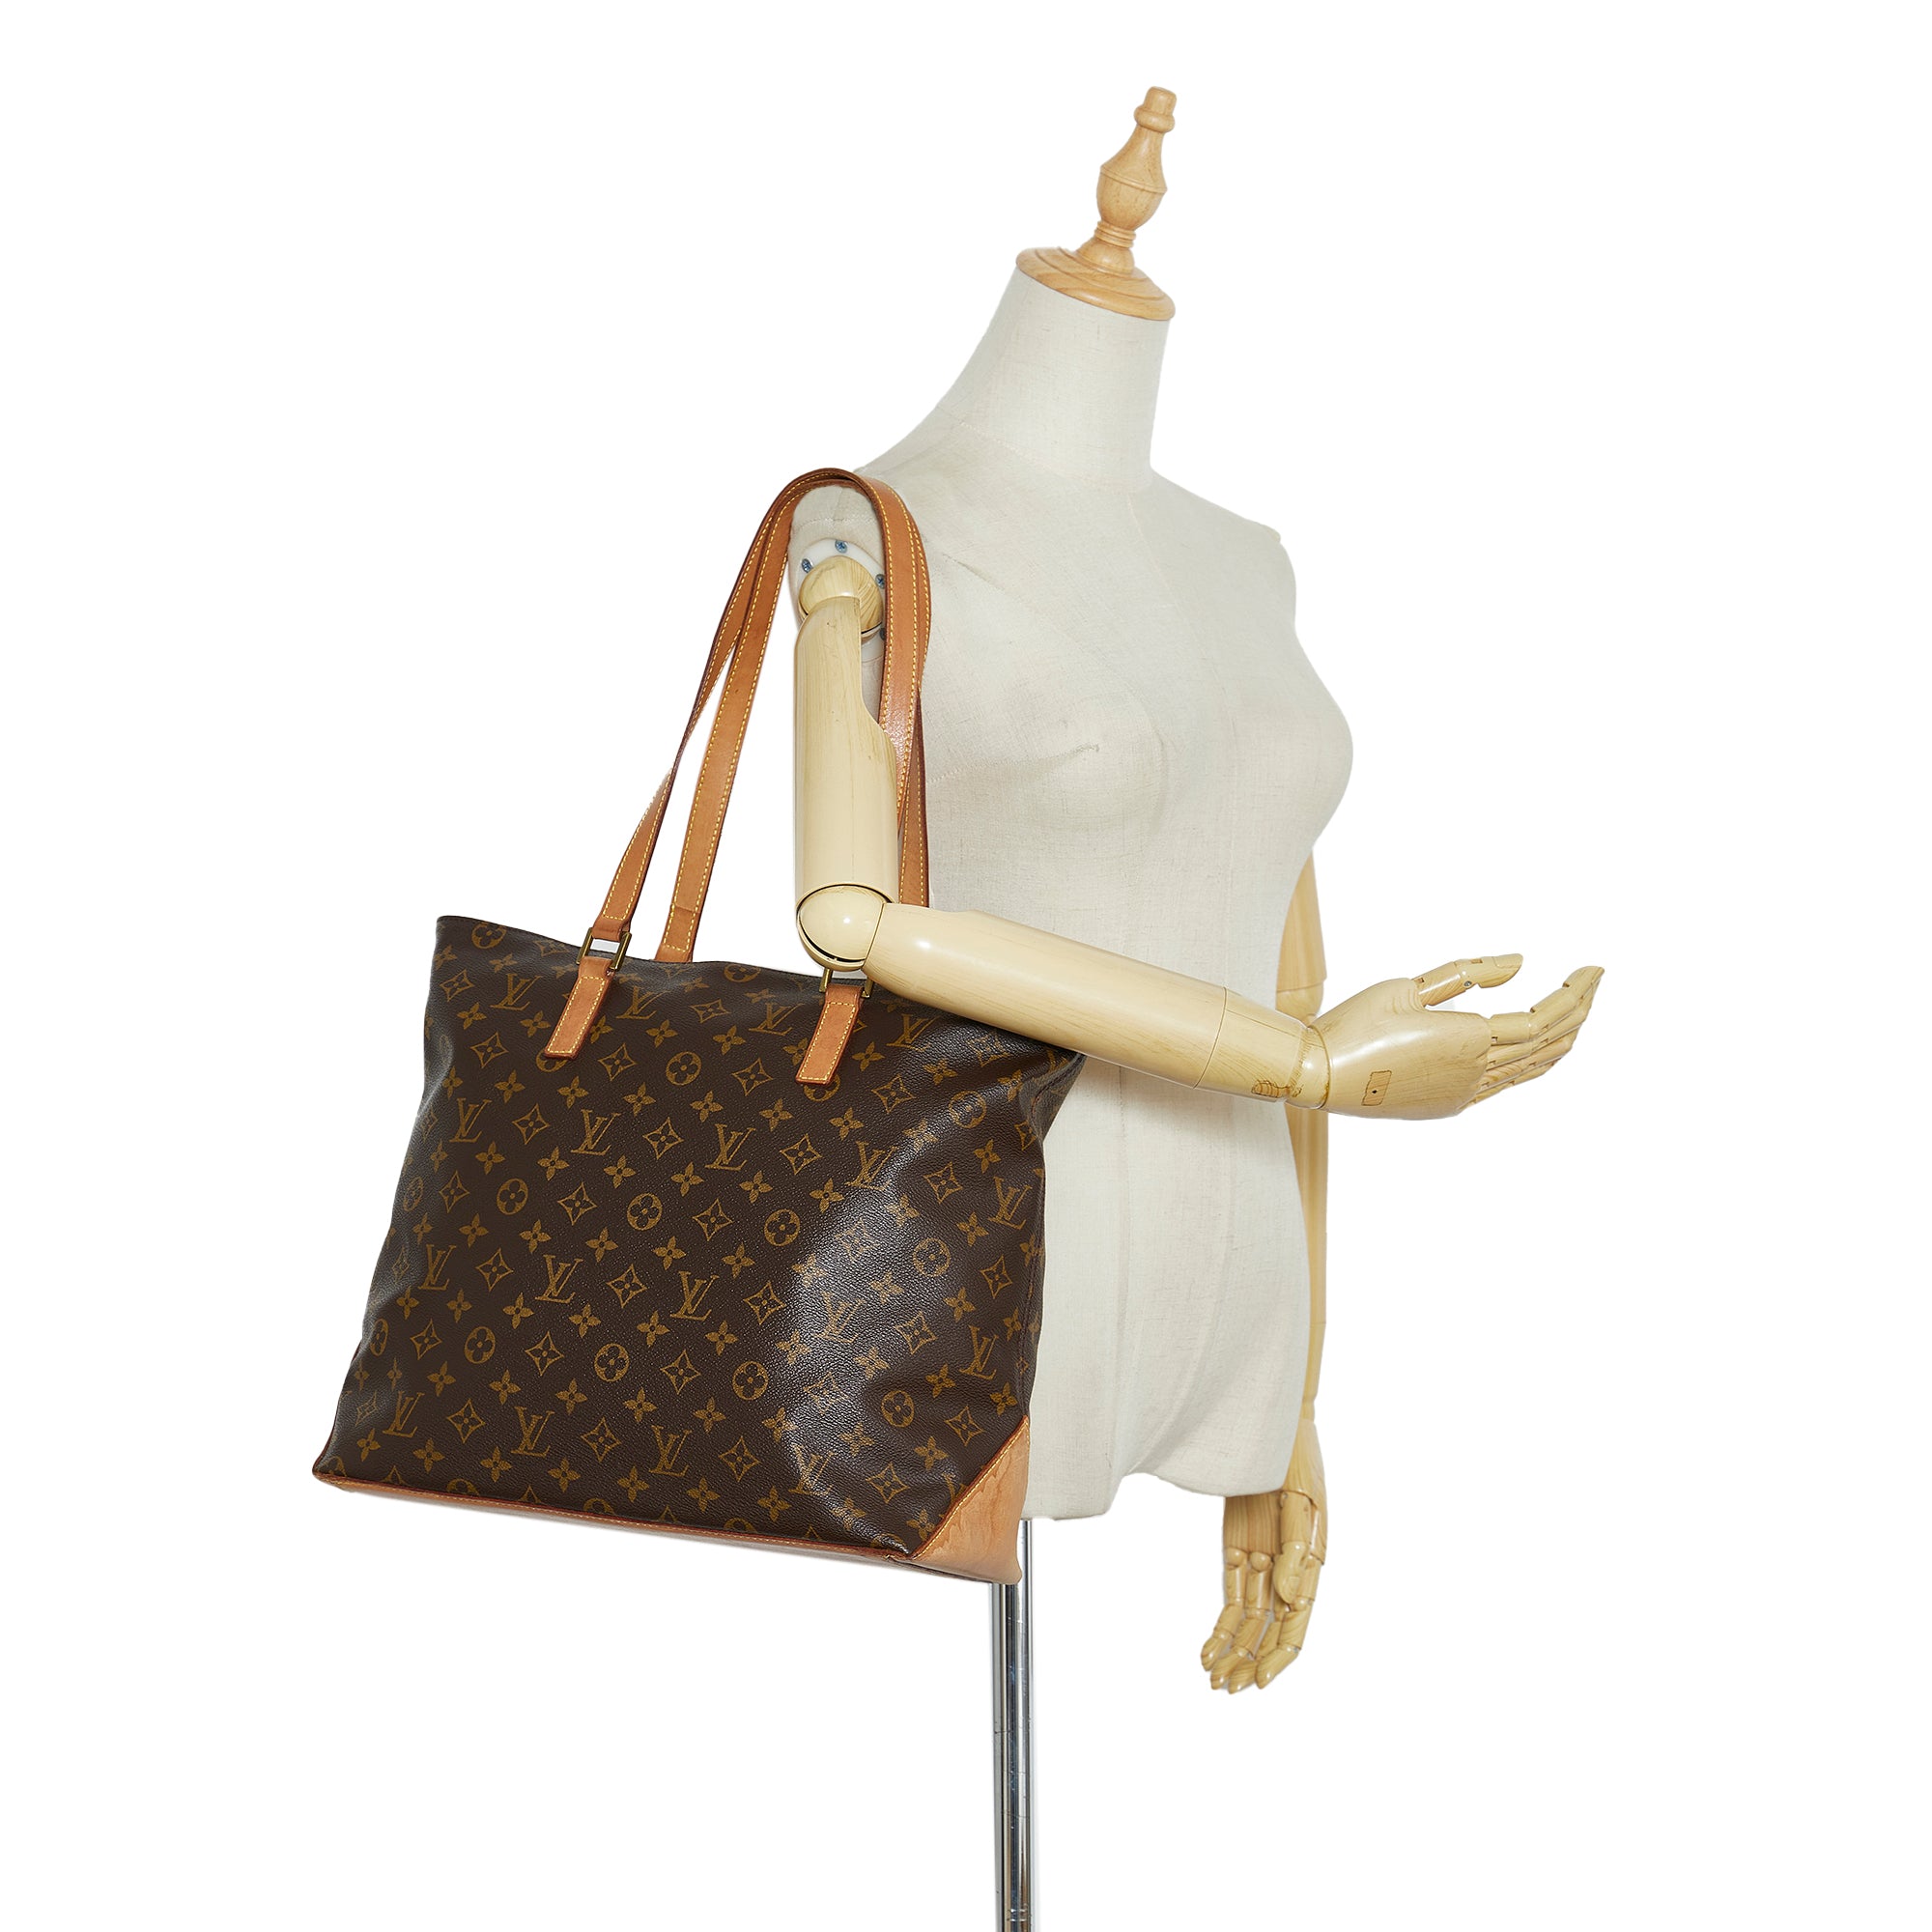 Authentic Louis Vuitton Cabas Mezzo Bag